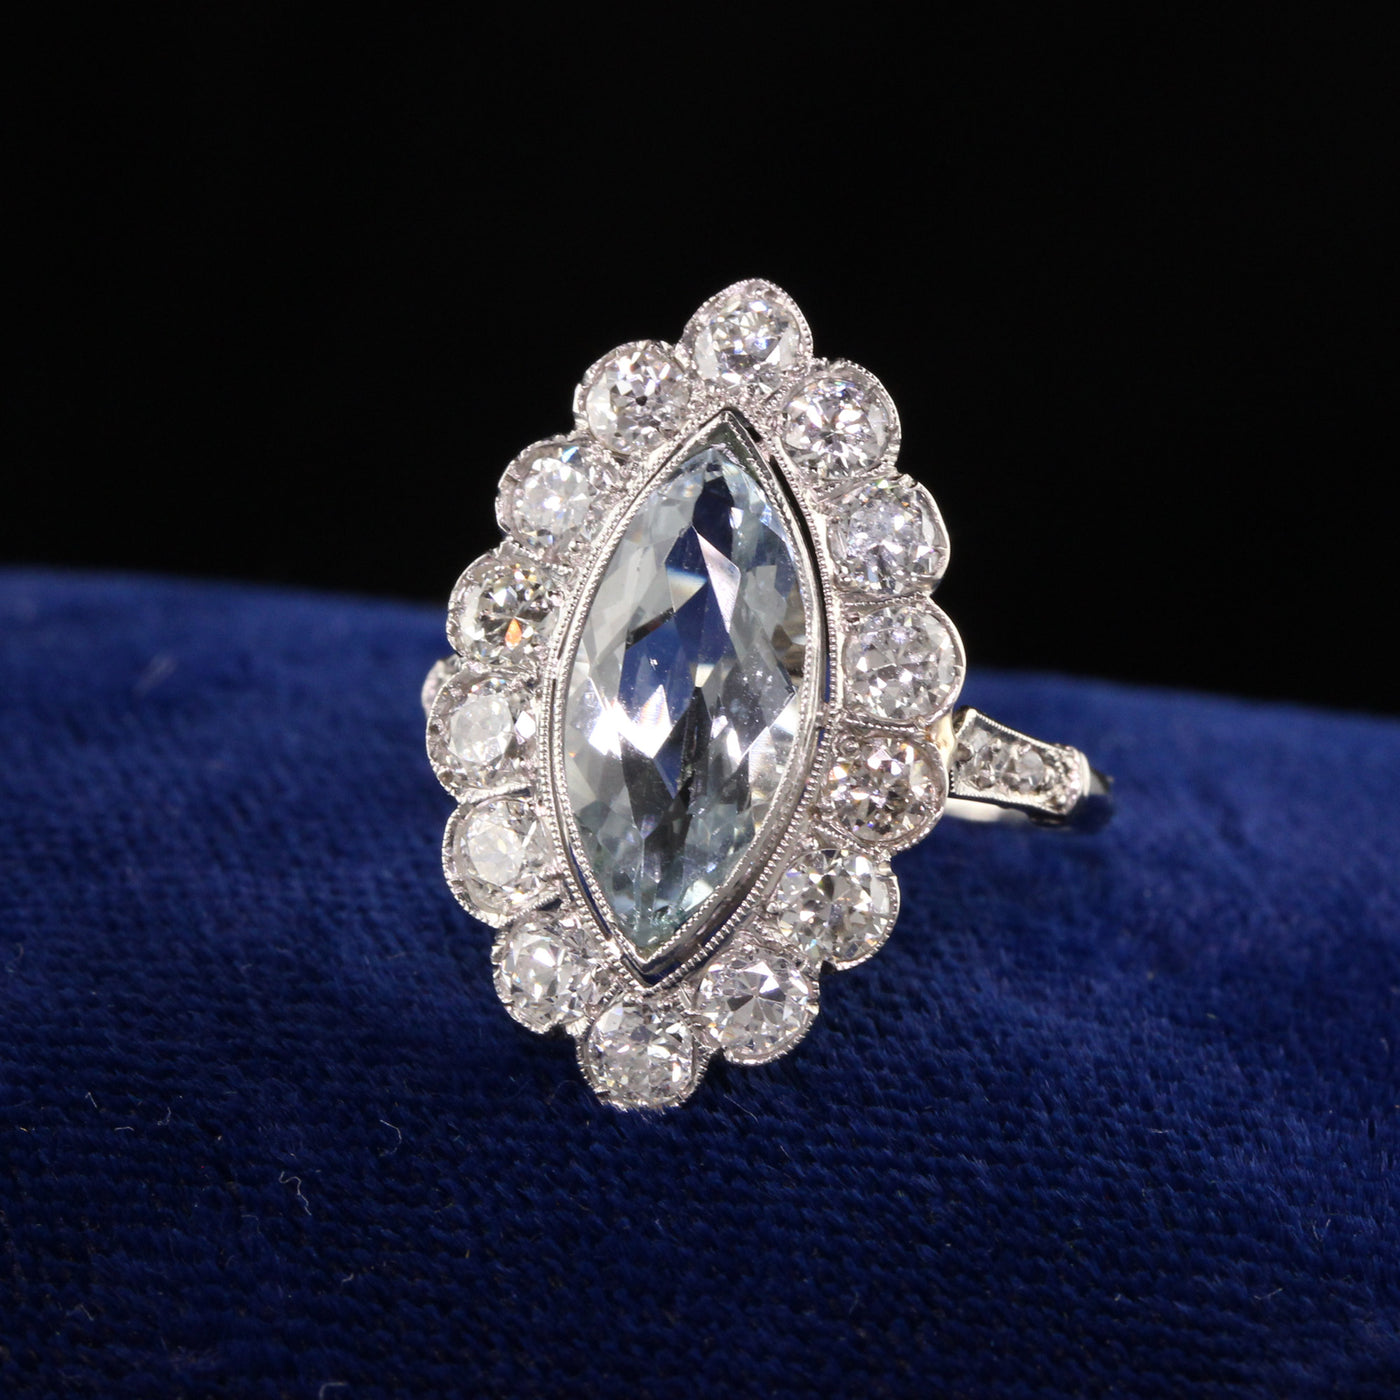 Antique Art Deco Platinum Aquamarine Old European Engagement Ring